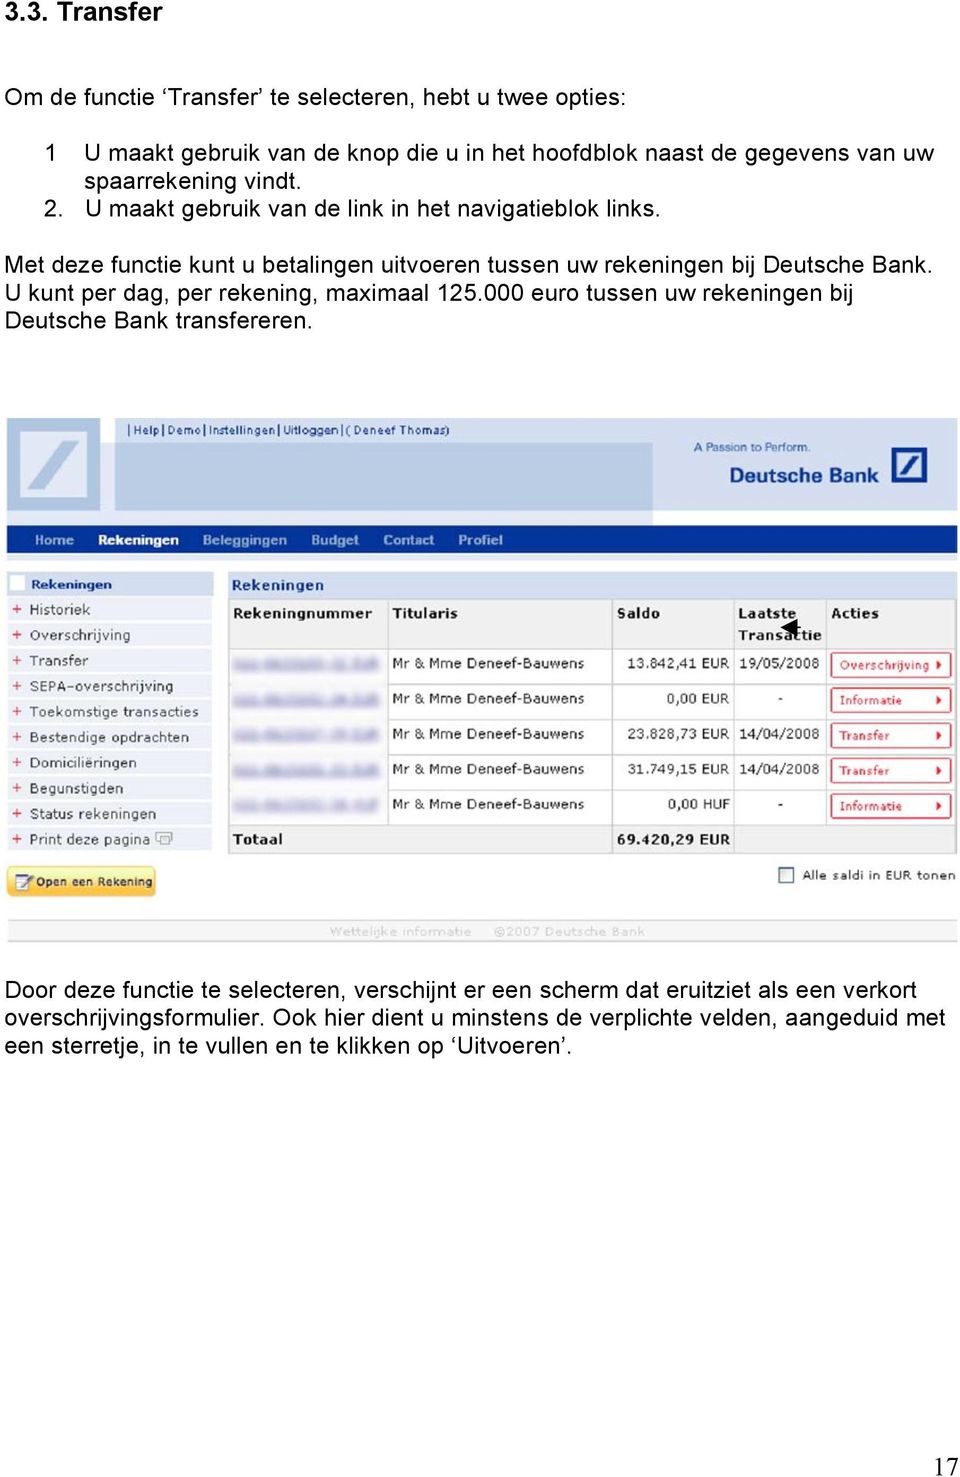 U kunt per dag, per rekening, maximaal 125.000 euro tussen uw rekeningen bij Deutsche Bank transfereren.